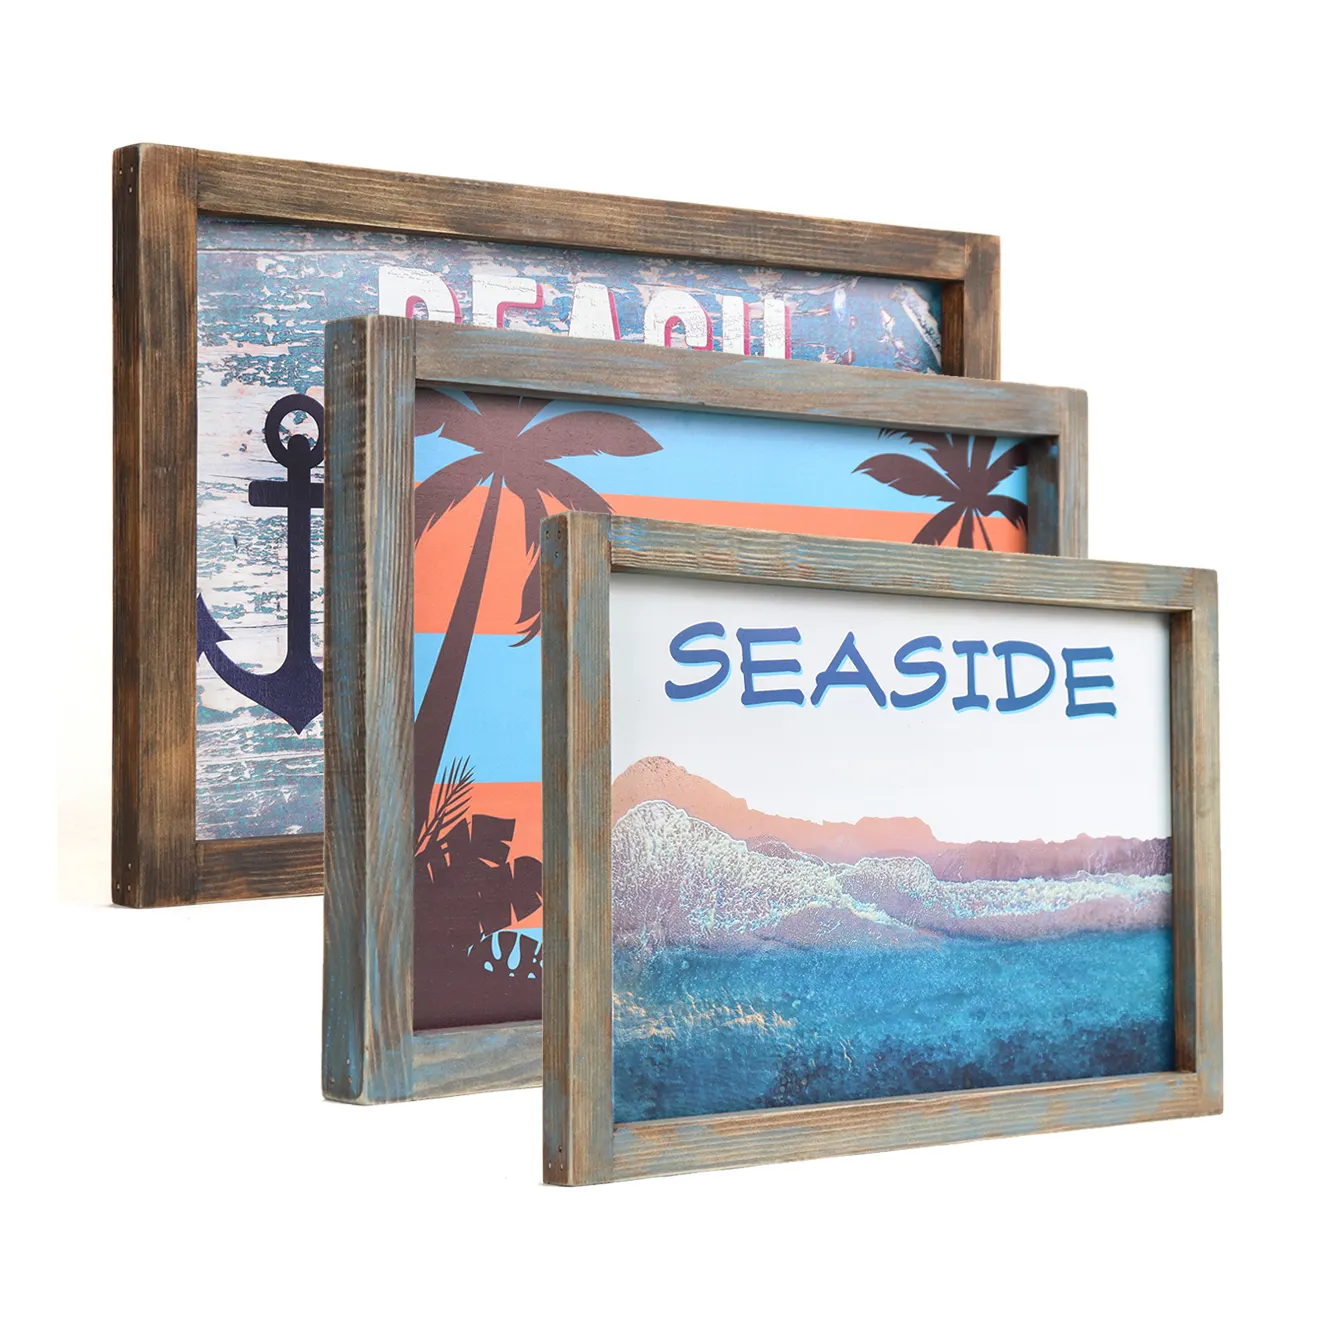 لافتة خشبية 12x18 بوصة لشاطئ ساحلي ملصق خشبي لشاطئ ساحلي ديكور فني يحظى برواج مواضيع بحرية